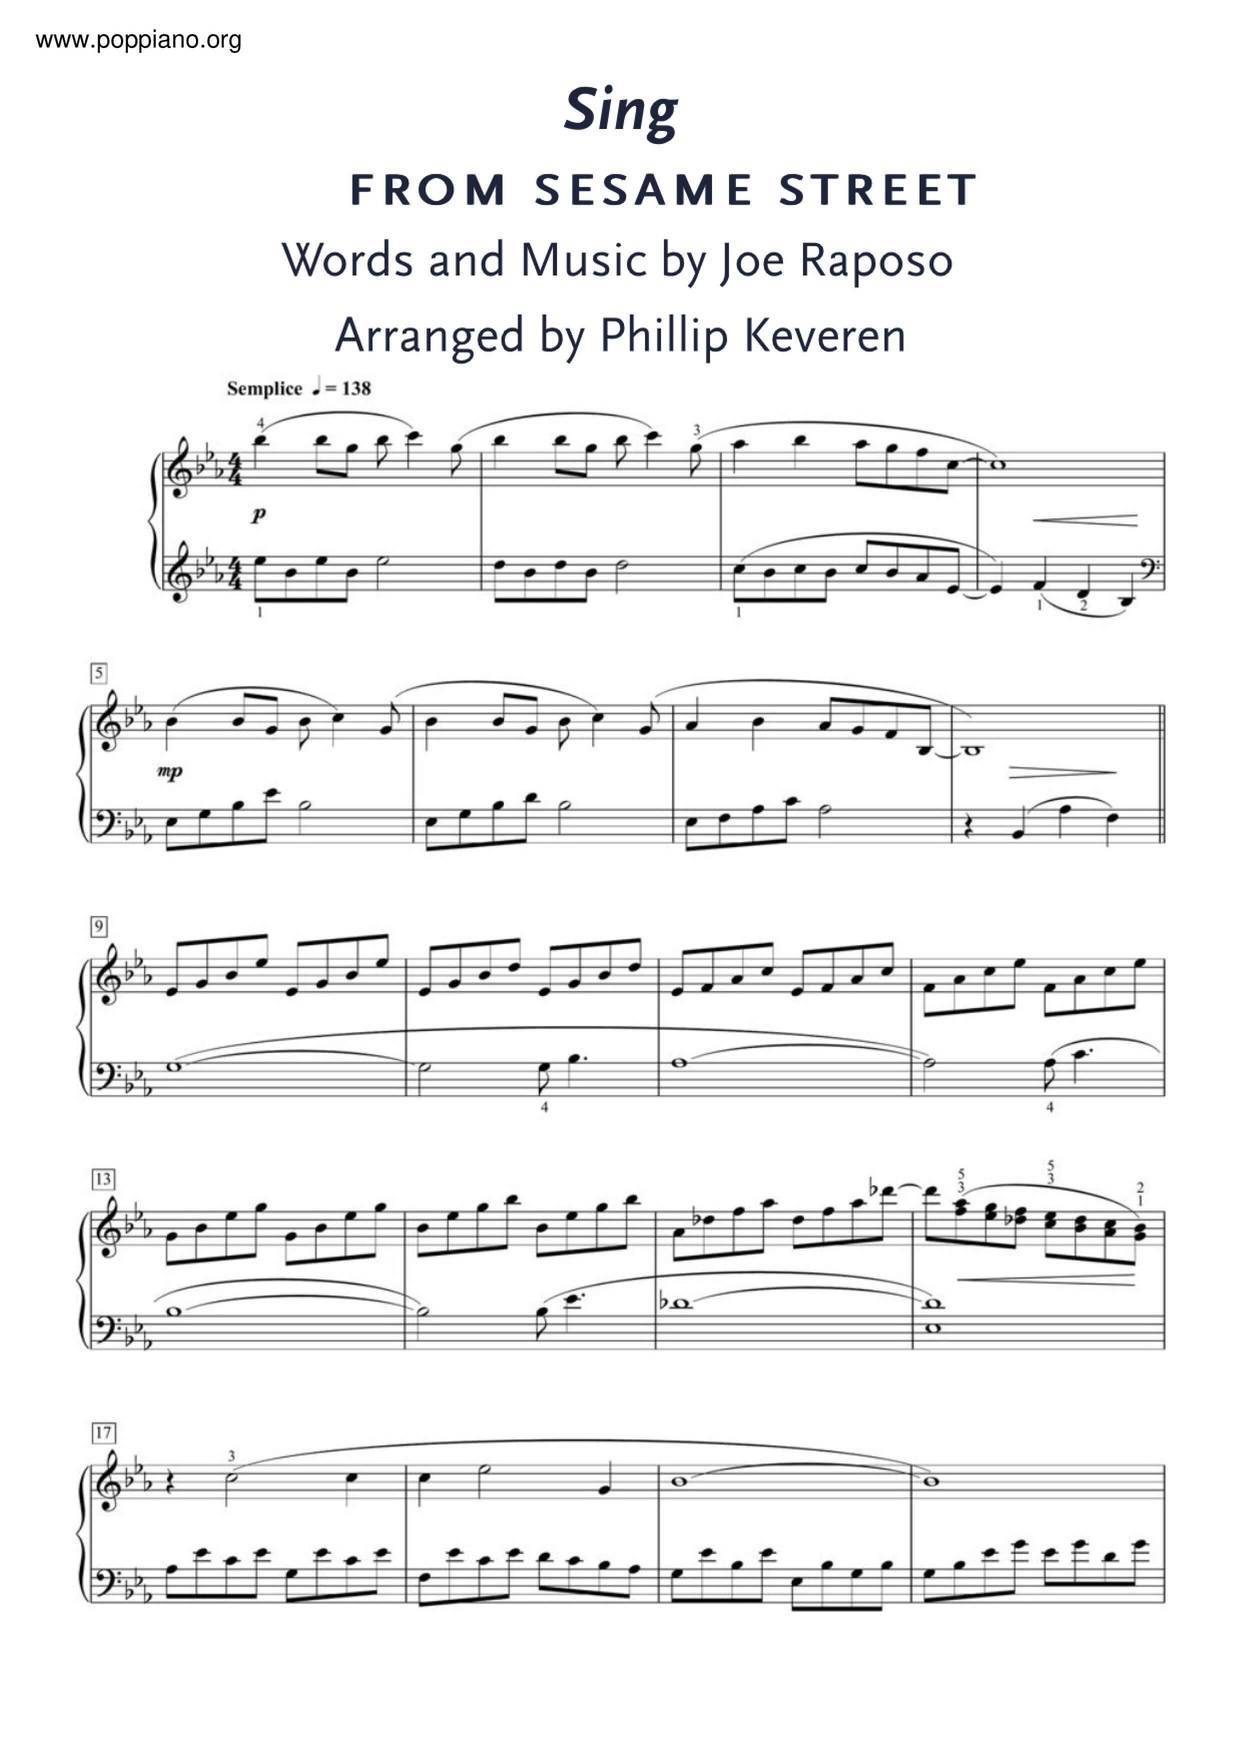 ☆ Carpenters-Sing Sheet Music pdf, - Free Score Download ☆